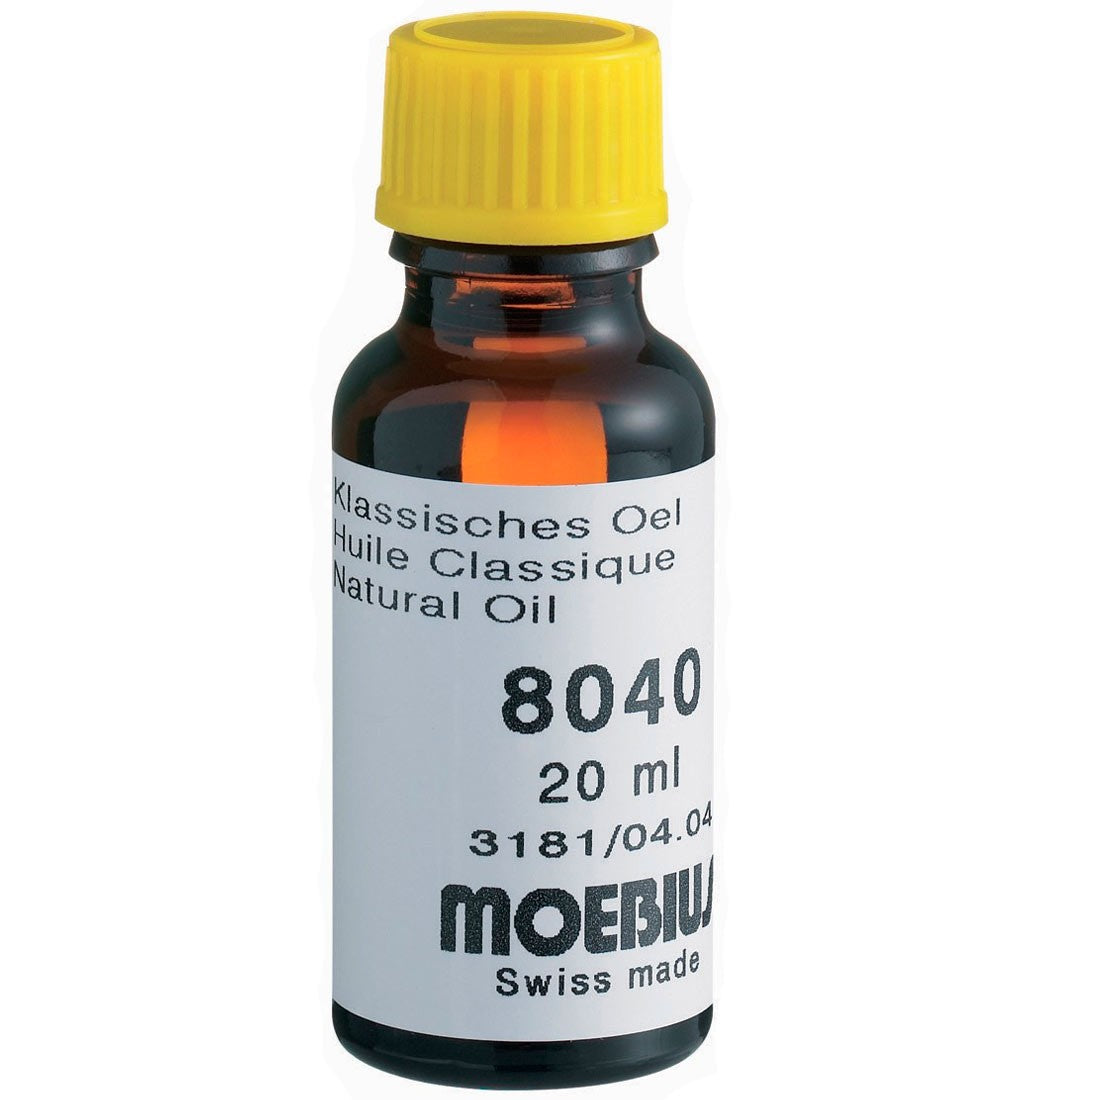 Moebius 8040 Clock Oil 20 ml | Esslinger